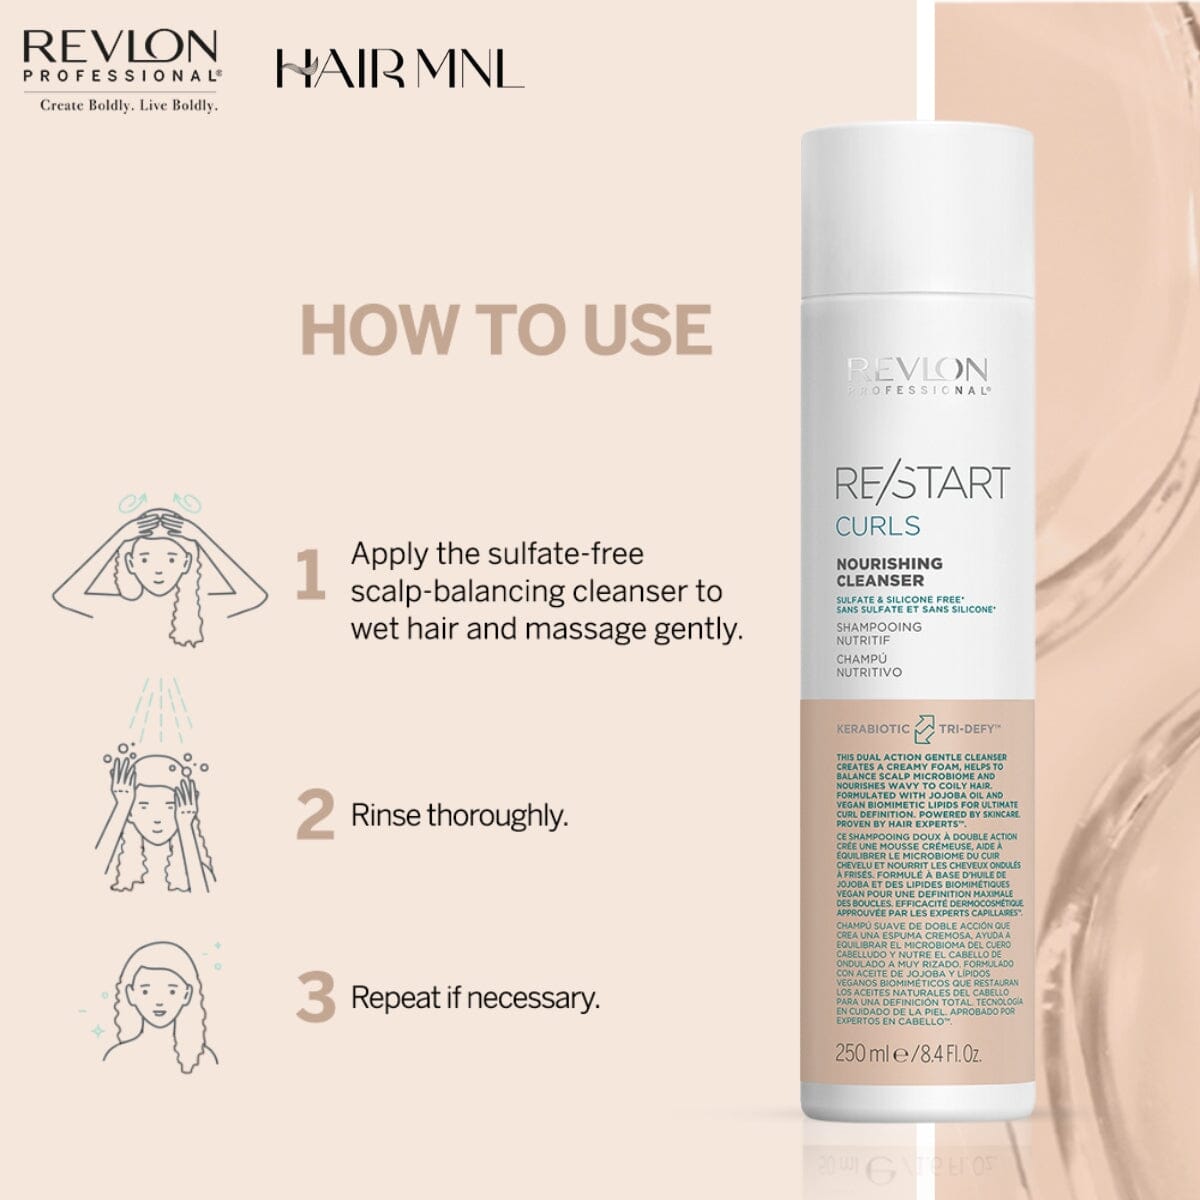 Revlon Pro ReStart - - Nourishing HairMNL HairMNL Curls 250ml Cleanser